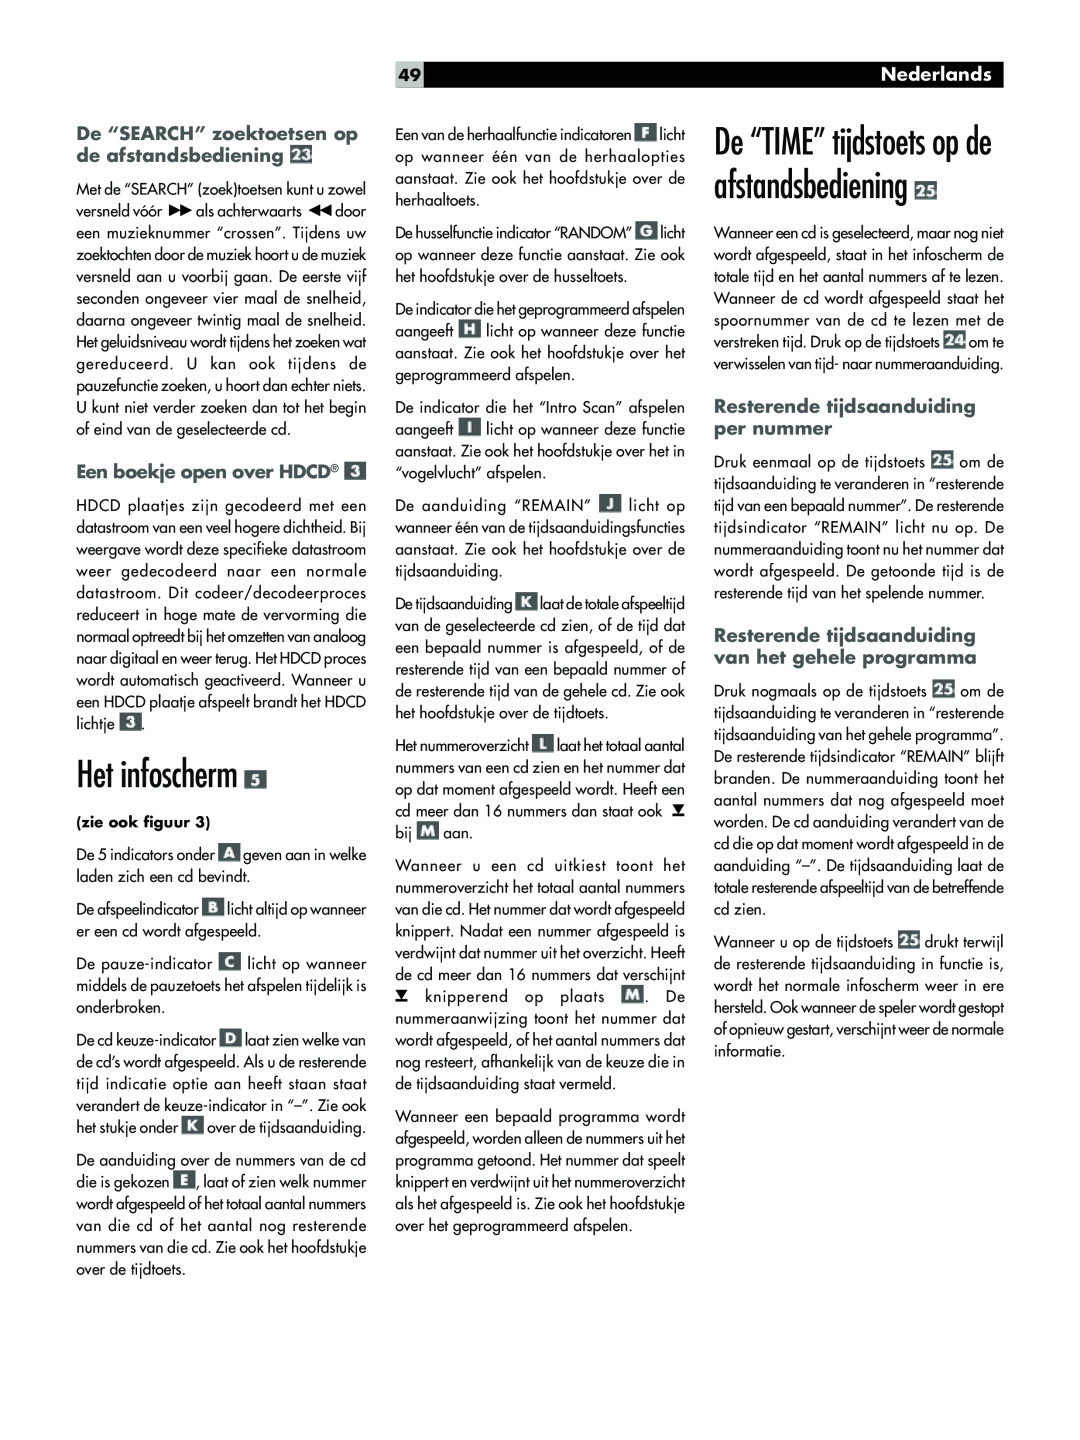 Rotel RCC-1055 Het infoscherm, De ÒTIMEÓ tijdstoets op de afstandsbediening, Een boekje open over HDCD¨, Nederlands 